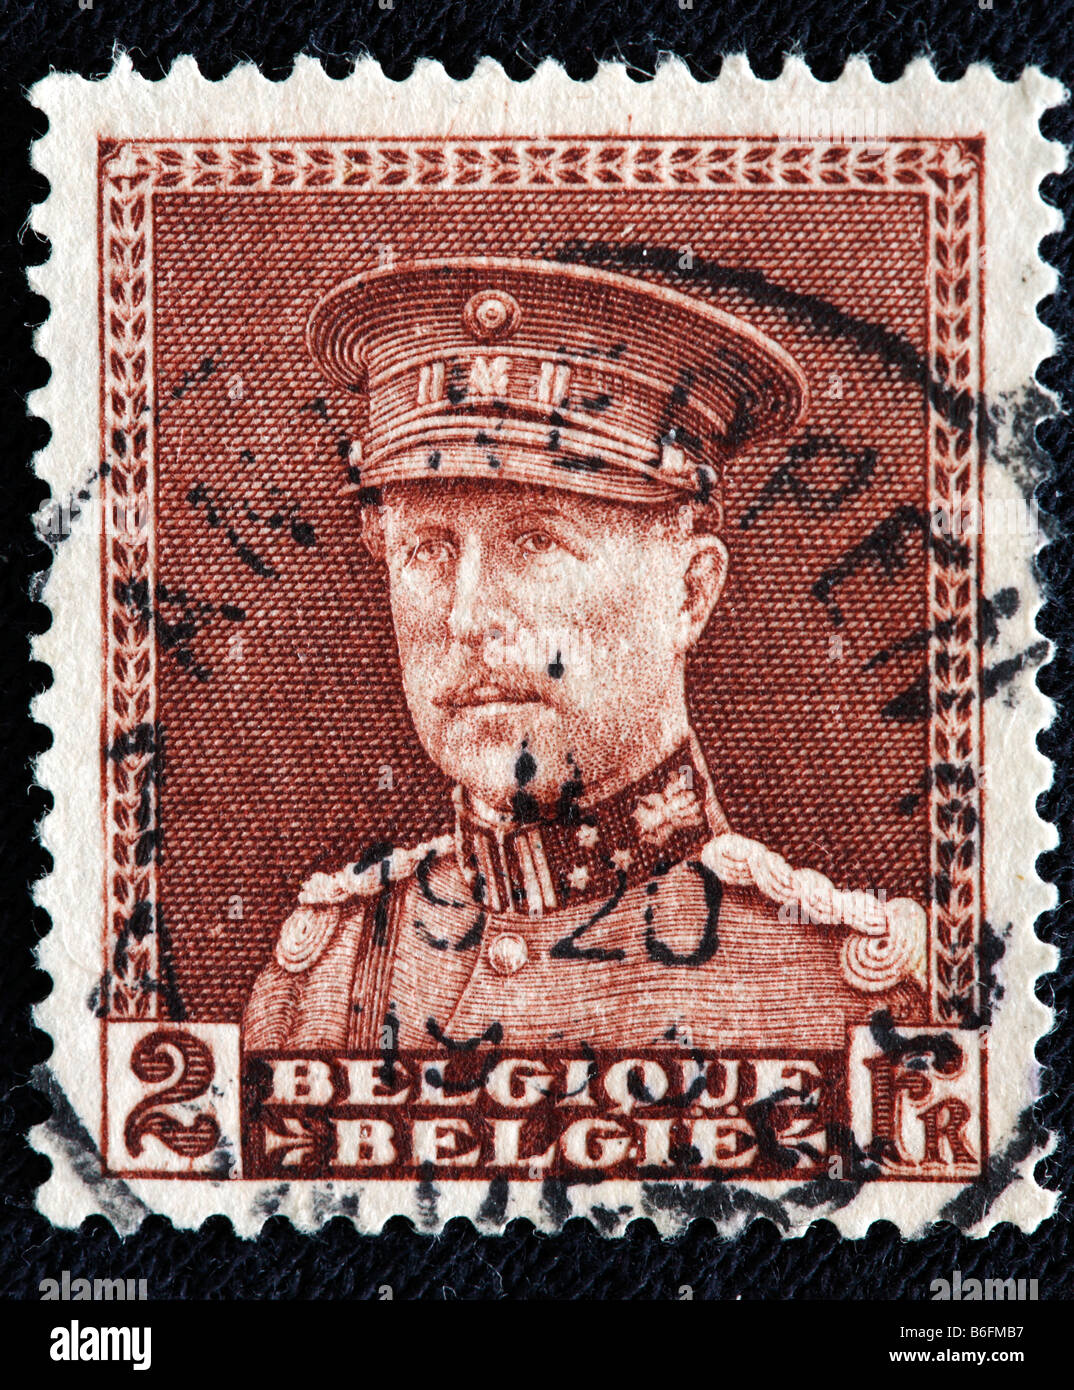 Le Roi Albert Ier de Belgique (1909-1934), timbre-poste, Belgique Banque D'Images